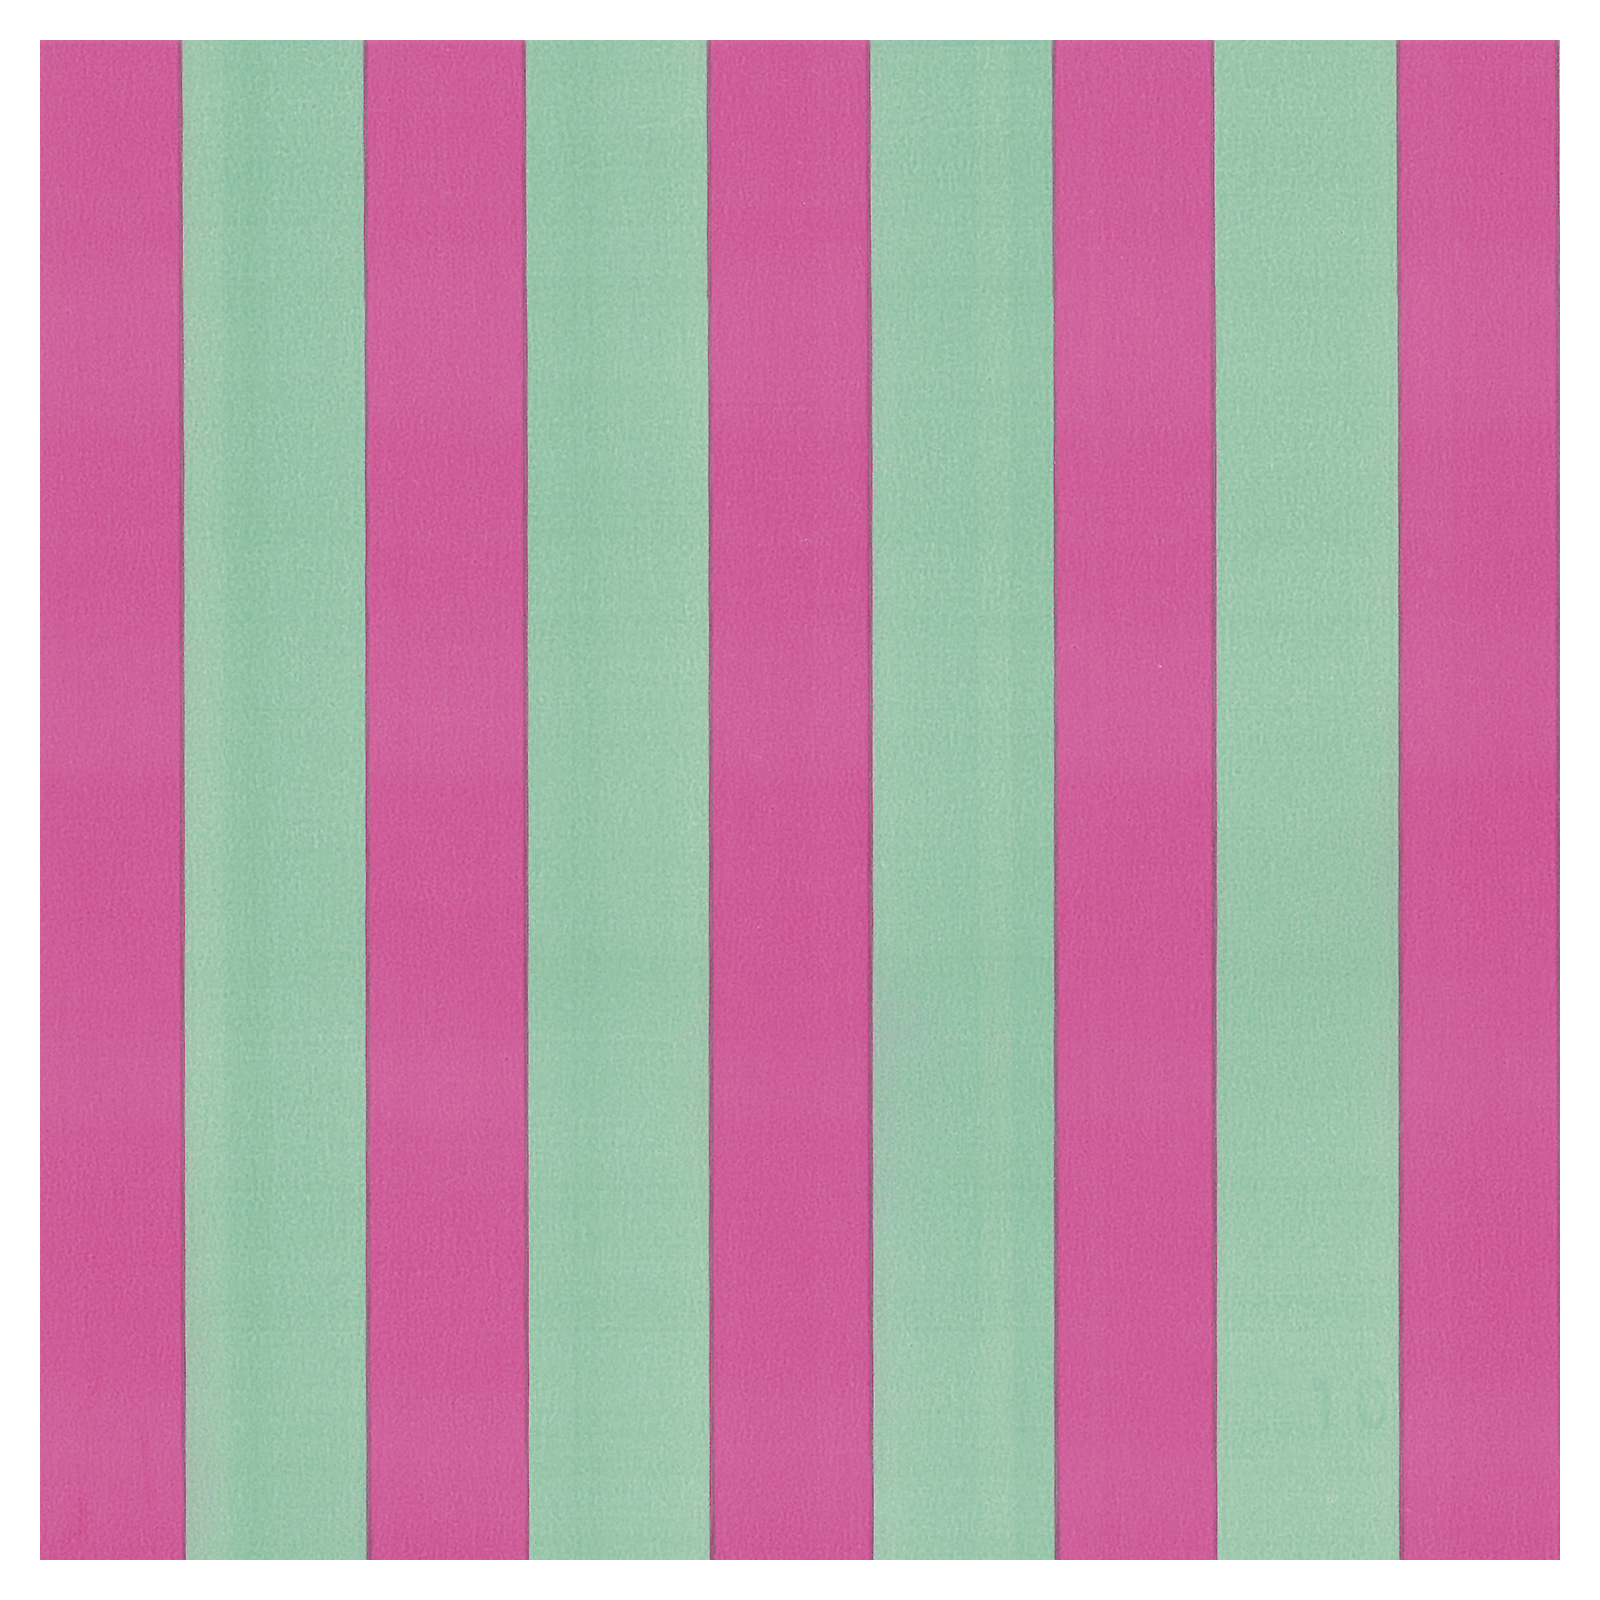 Geschenkpapier Linea weissgrn-rosa, 50 cm:100 m